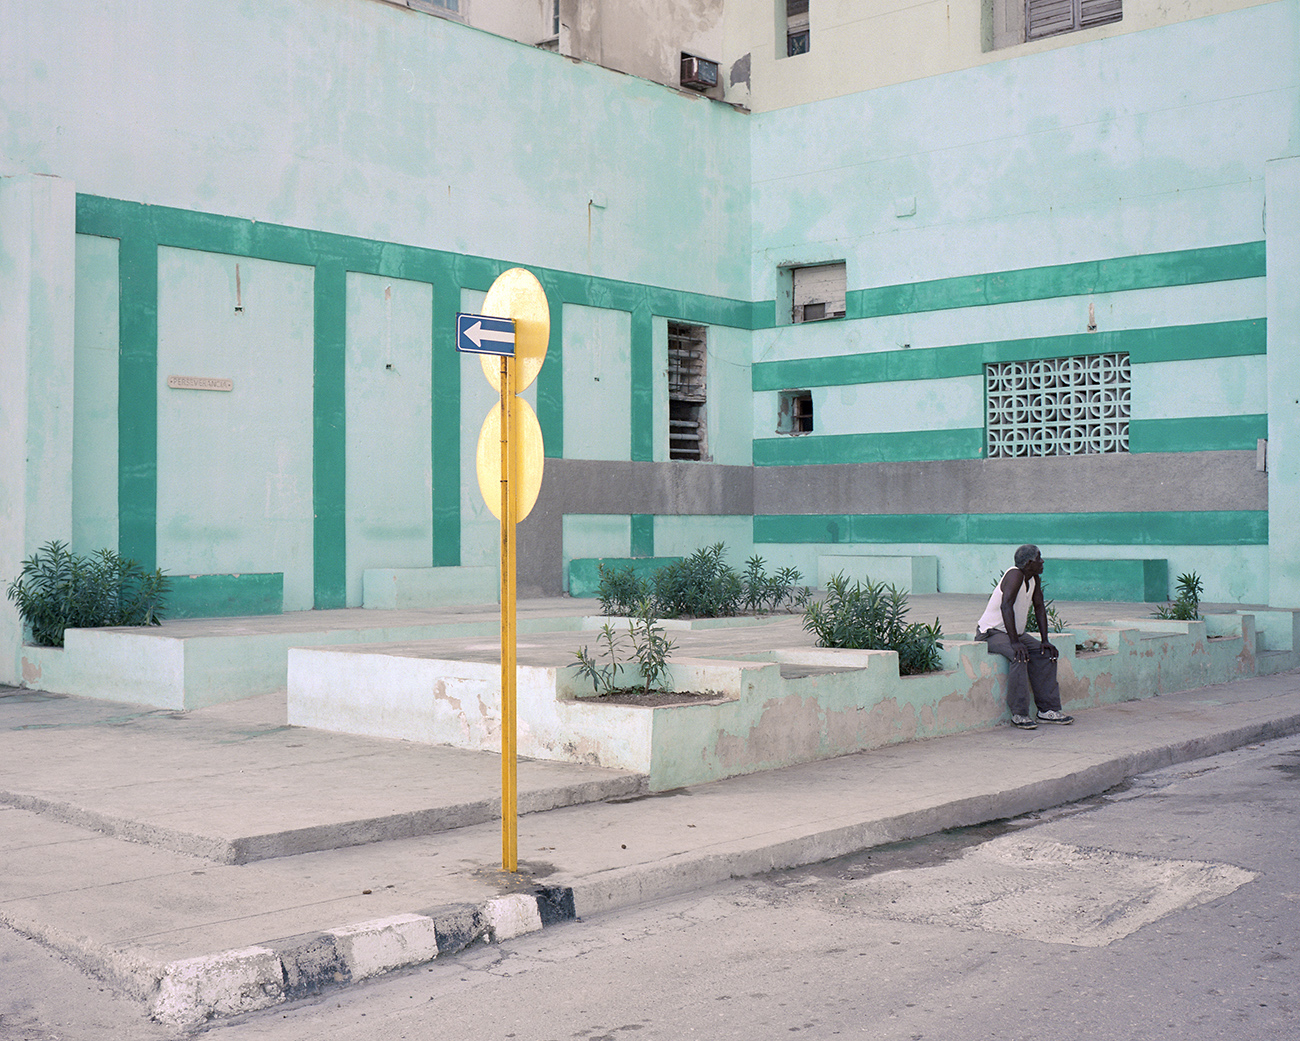 Streetscene. La Habana, Cuba 2018